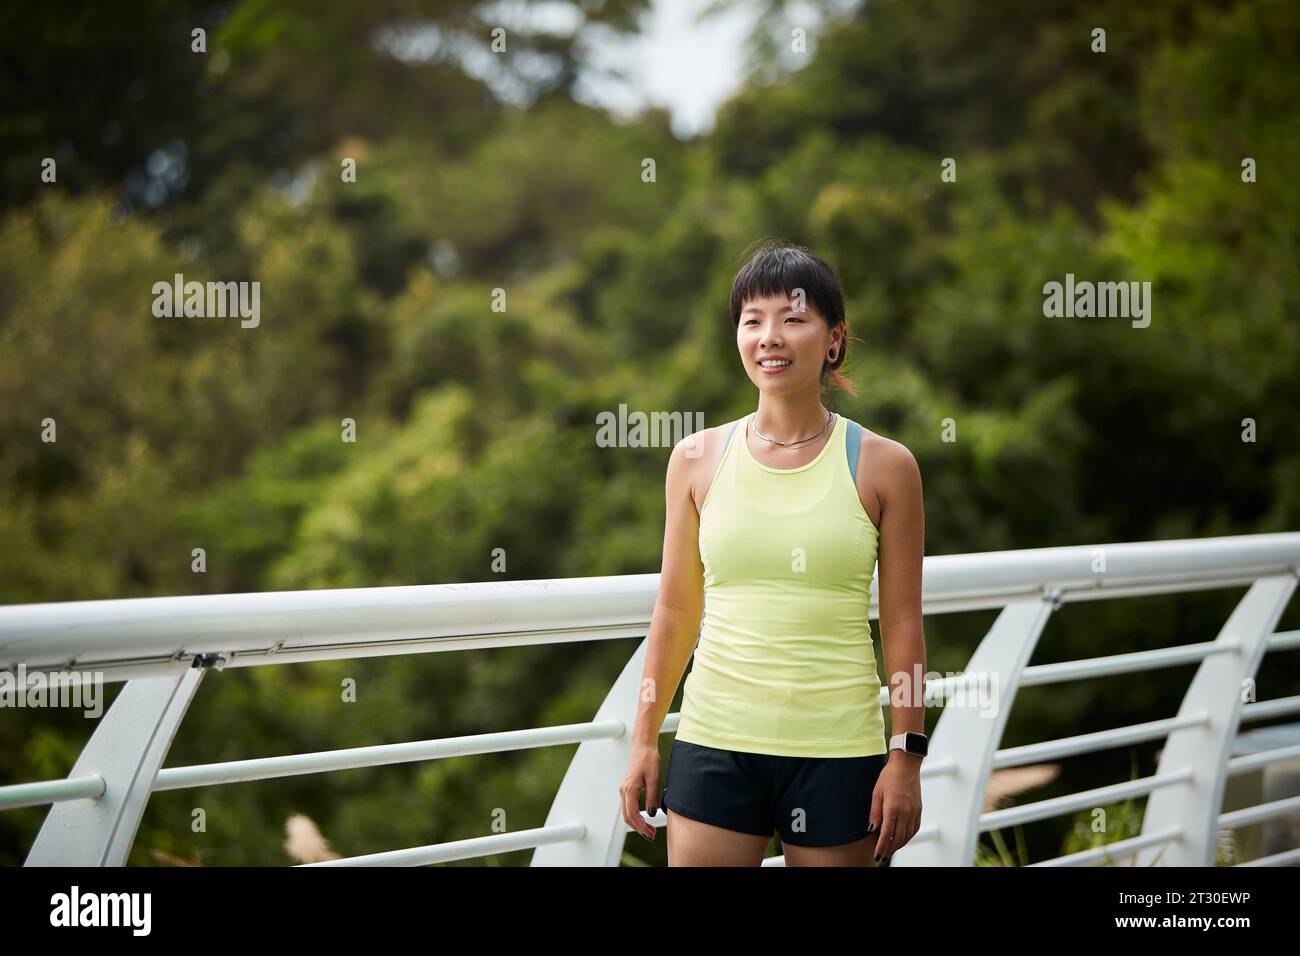 portrait en plein air d'une athlète féminine asiatique heureuse Banque D'Images